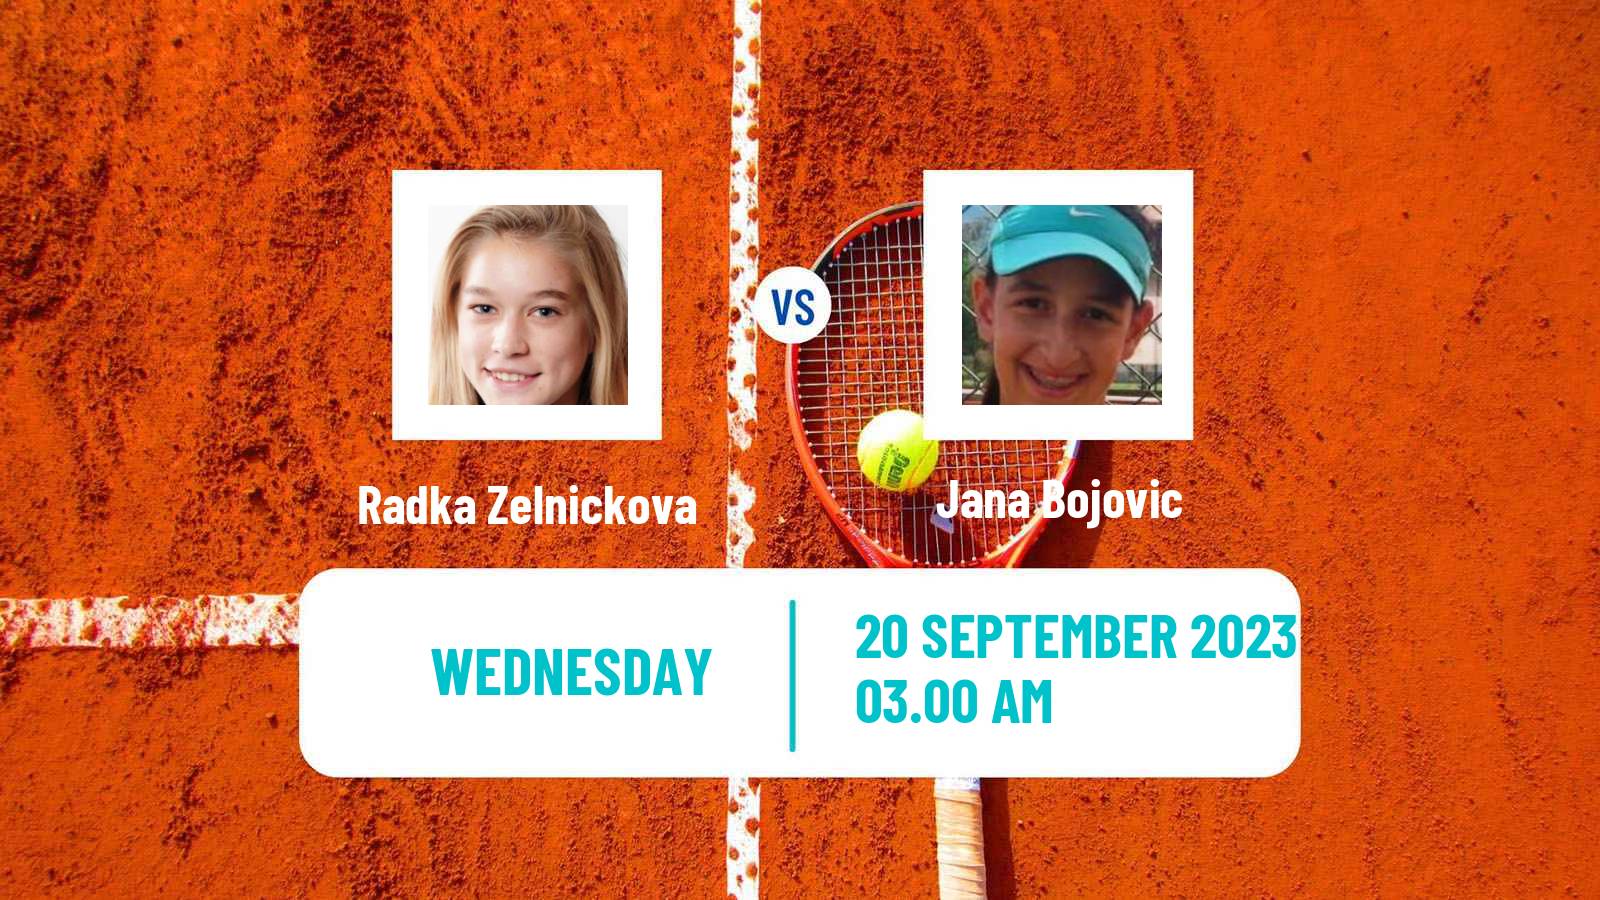 Tennis ITF W40 Pazardzhik Women Radka Zelnickova - Jana Bojovic